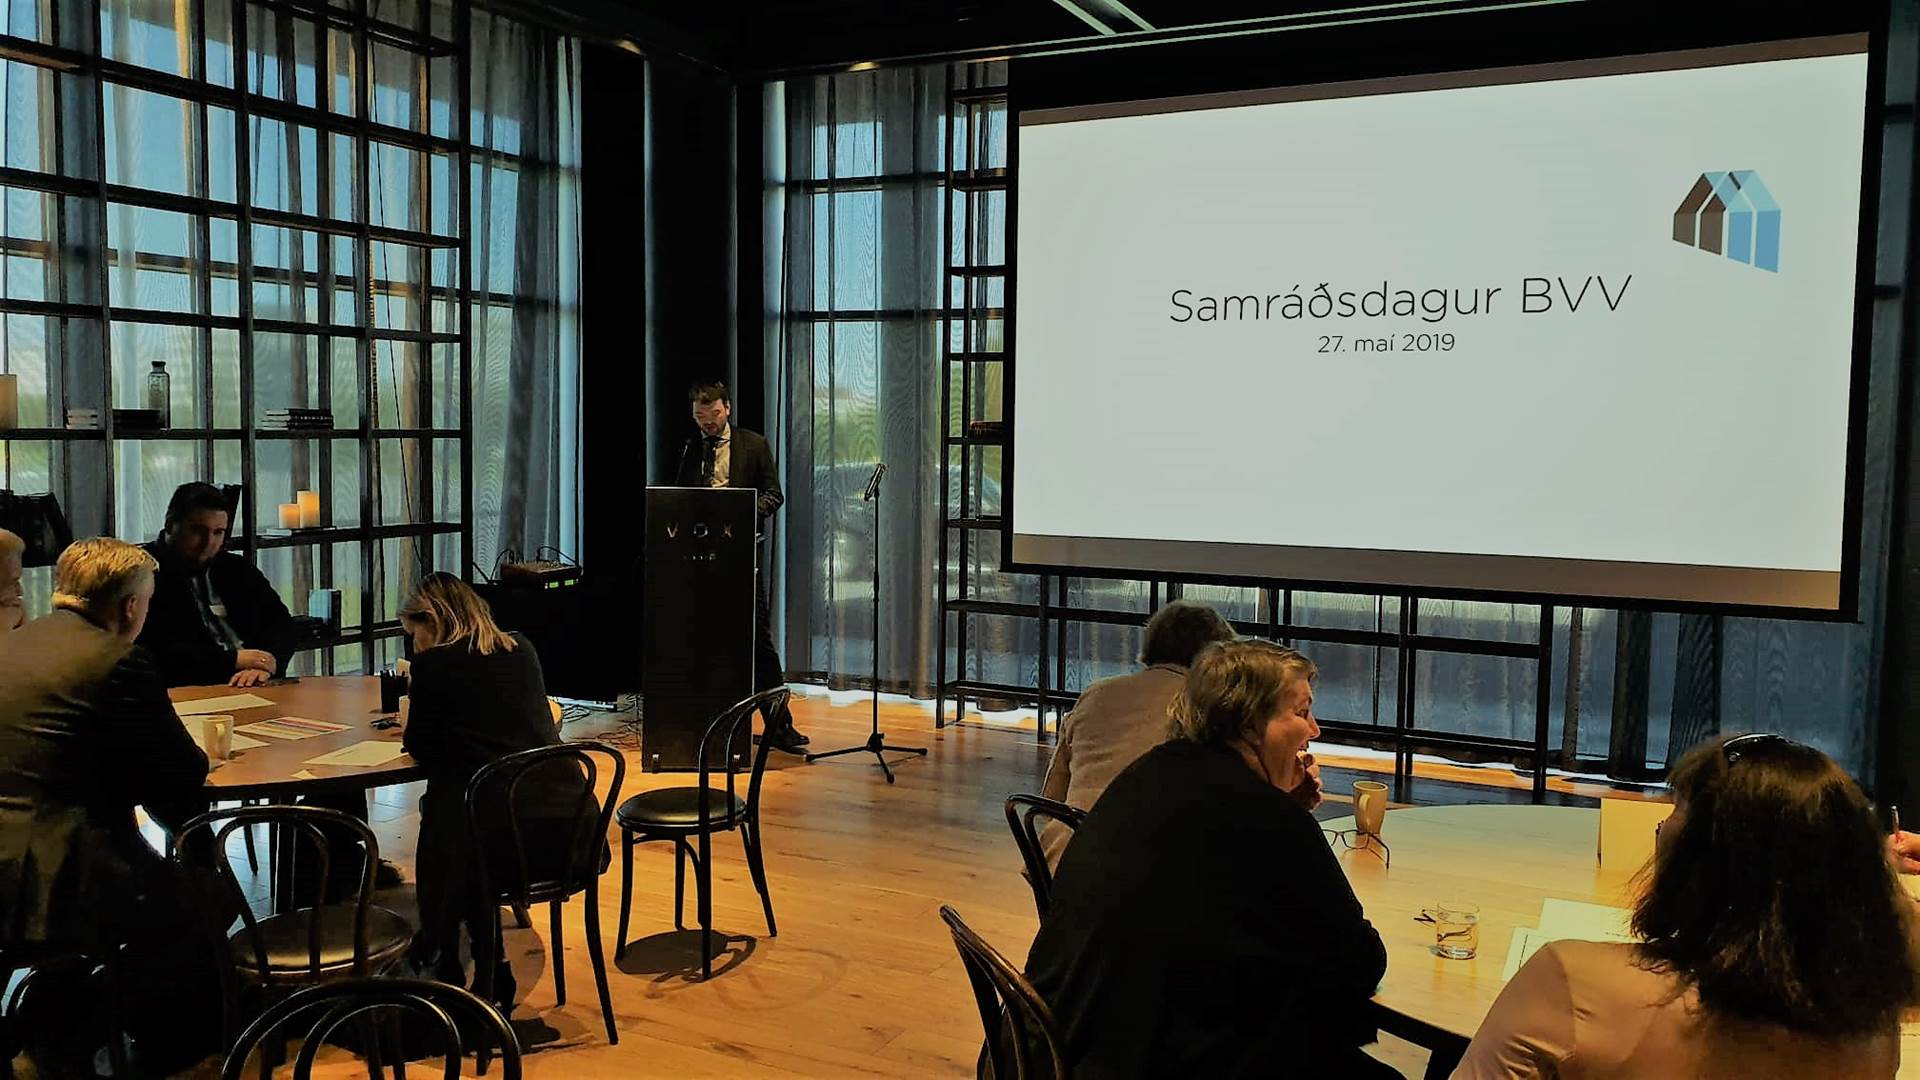 Samráðsdagur Byggingavettvangs 2019